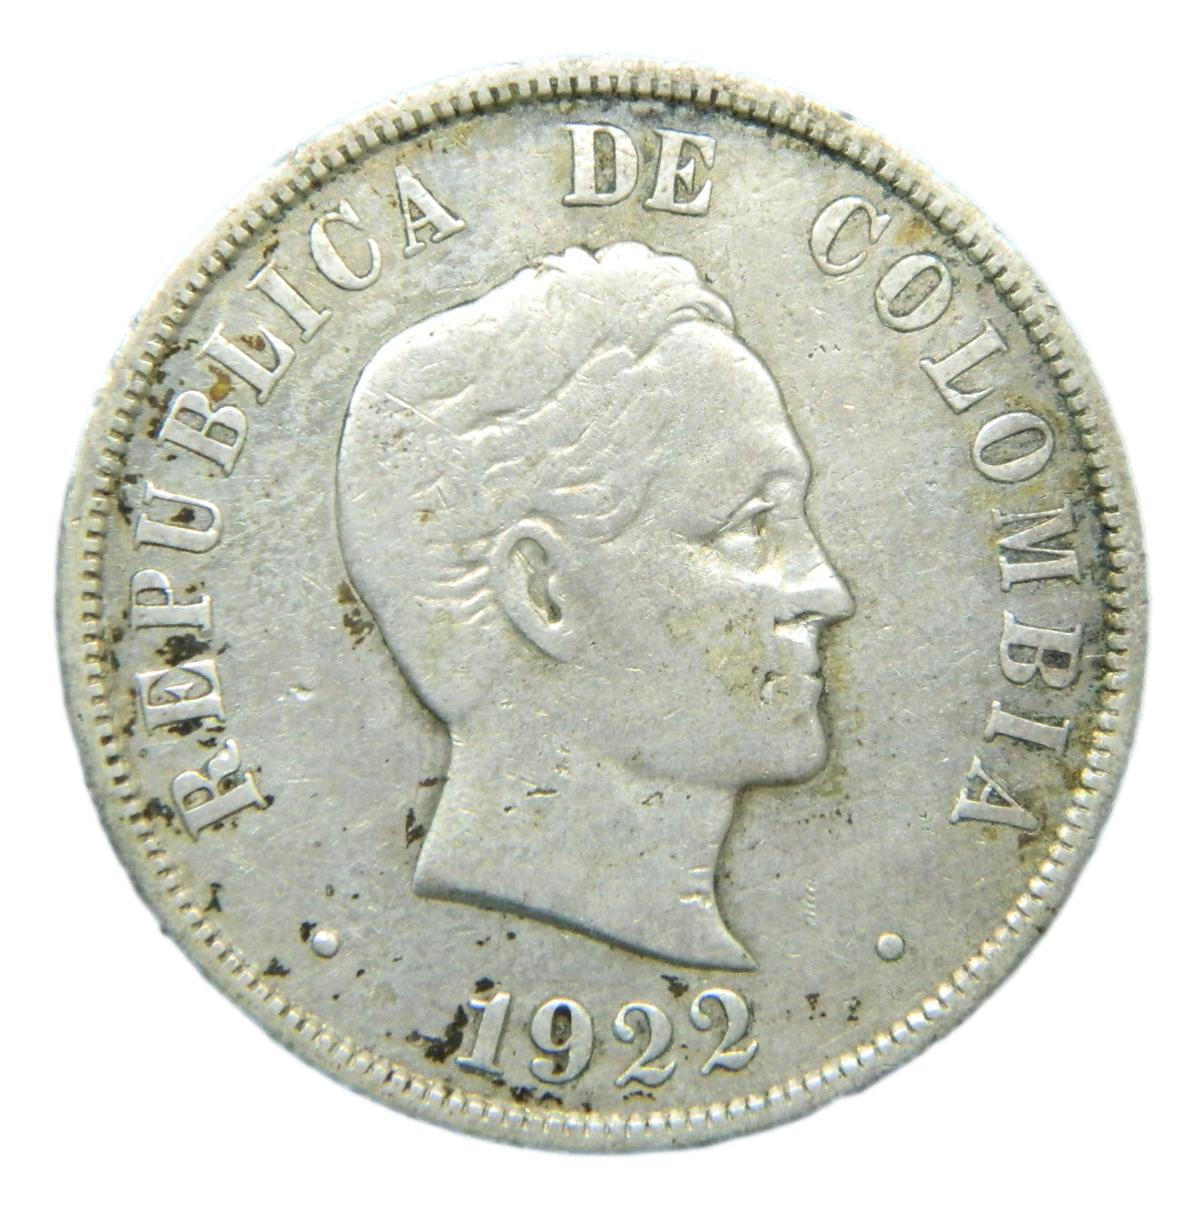 1922 - COLOMBIA - 50 CENTAVOS - PLATA